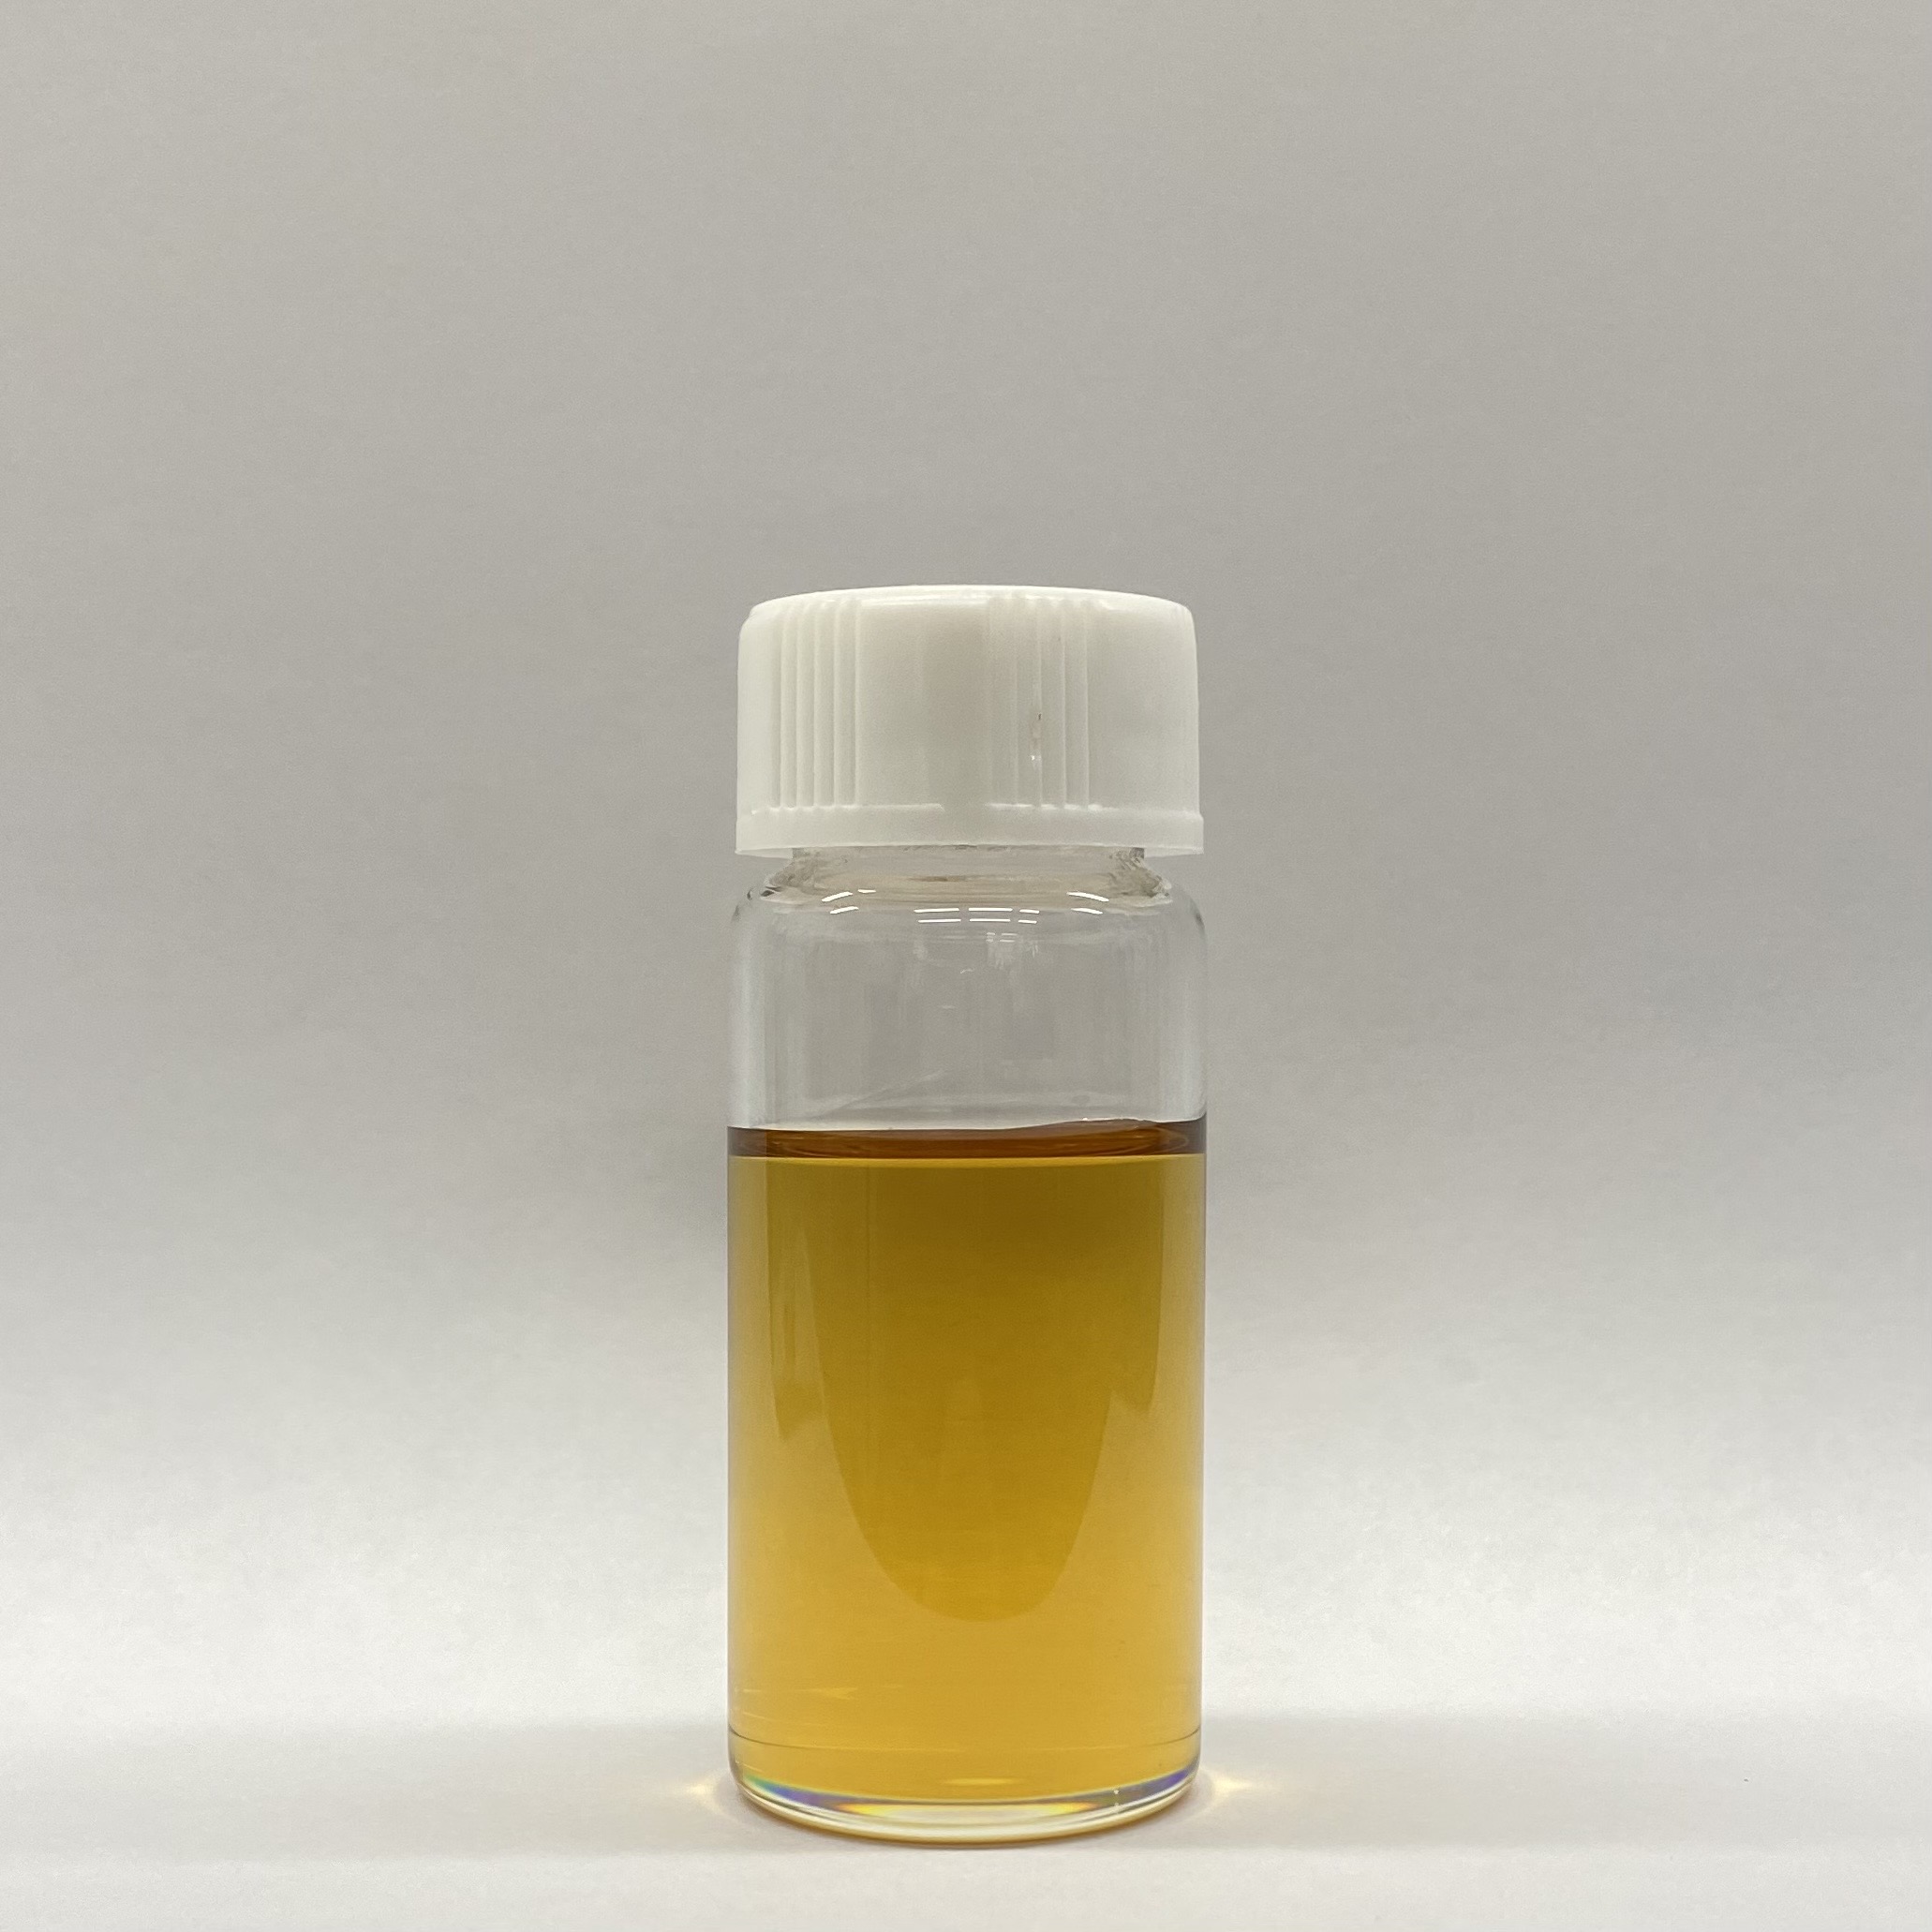 카다놀 기반 UV경화수지 (Cardanol based UV acrylate)